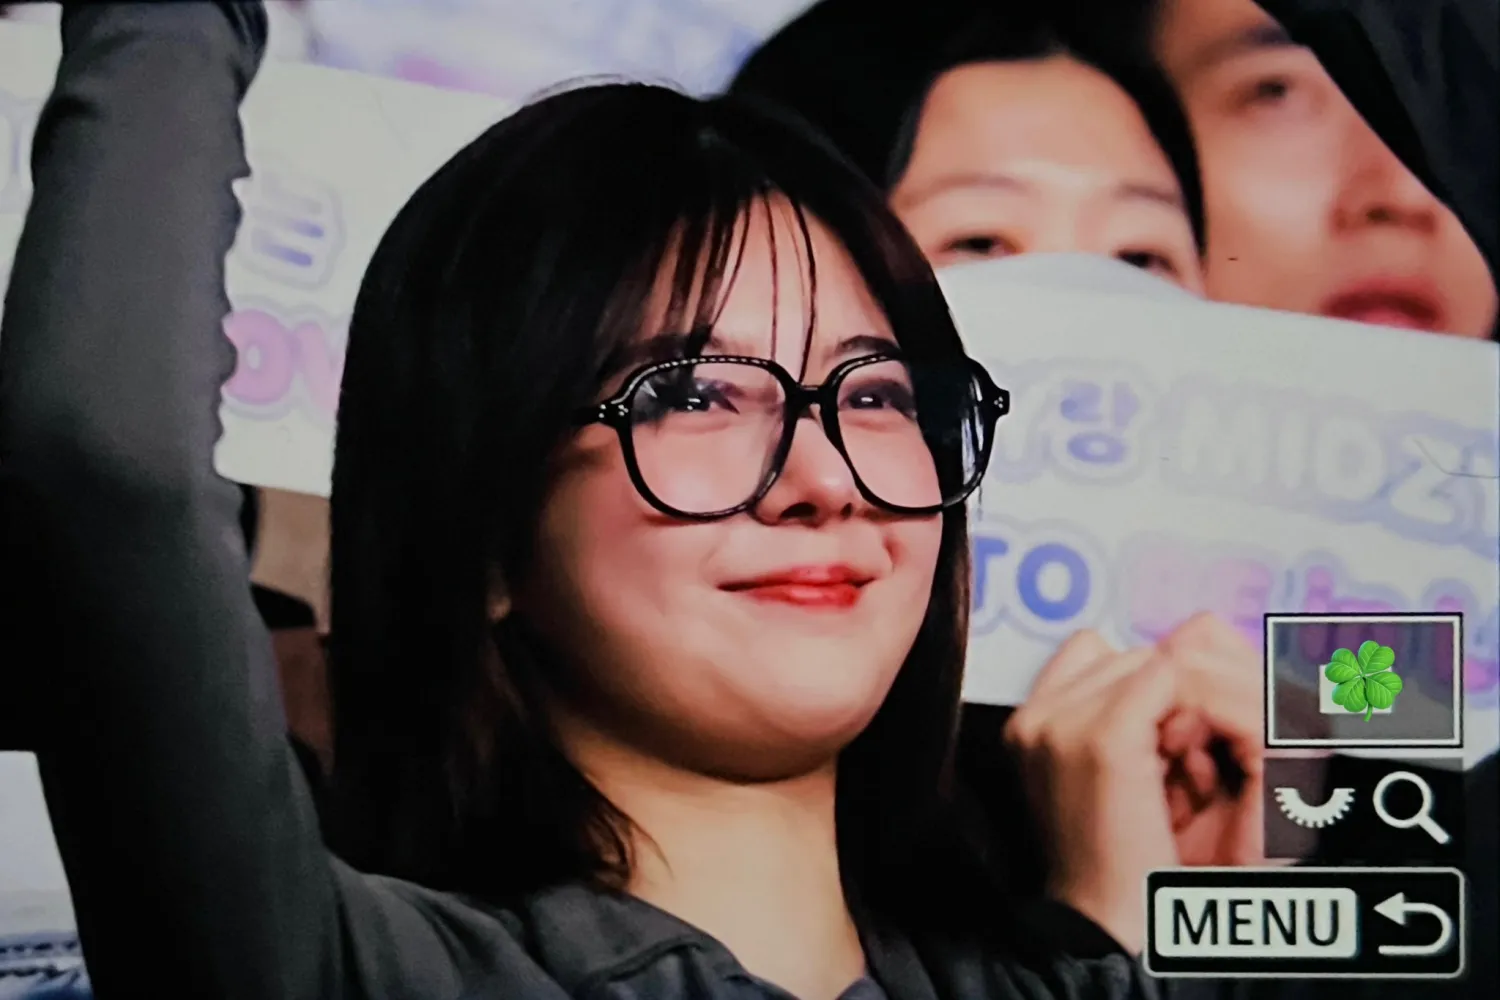 „MY OT5“: ITZY Lia hat MIDZYs emotional gemacht, indem sie das Seoul-Konzert „BORN TO BE“ der Gruppe unterstützt hat